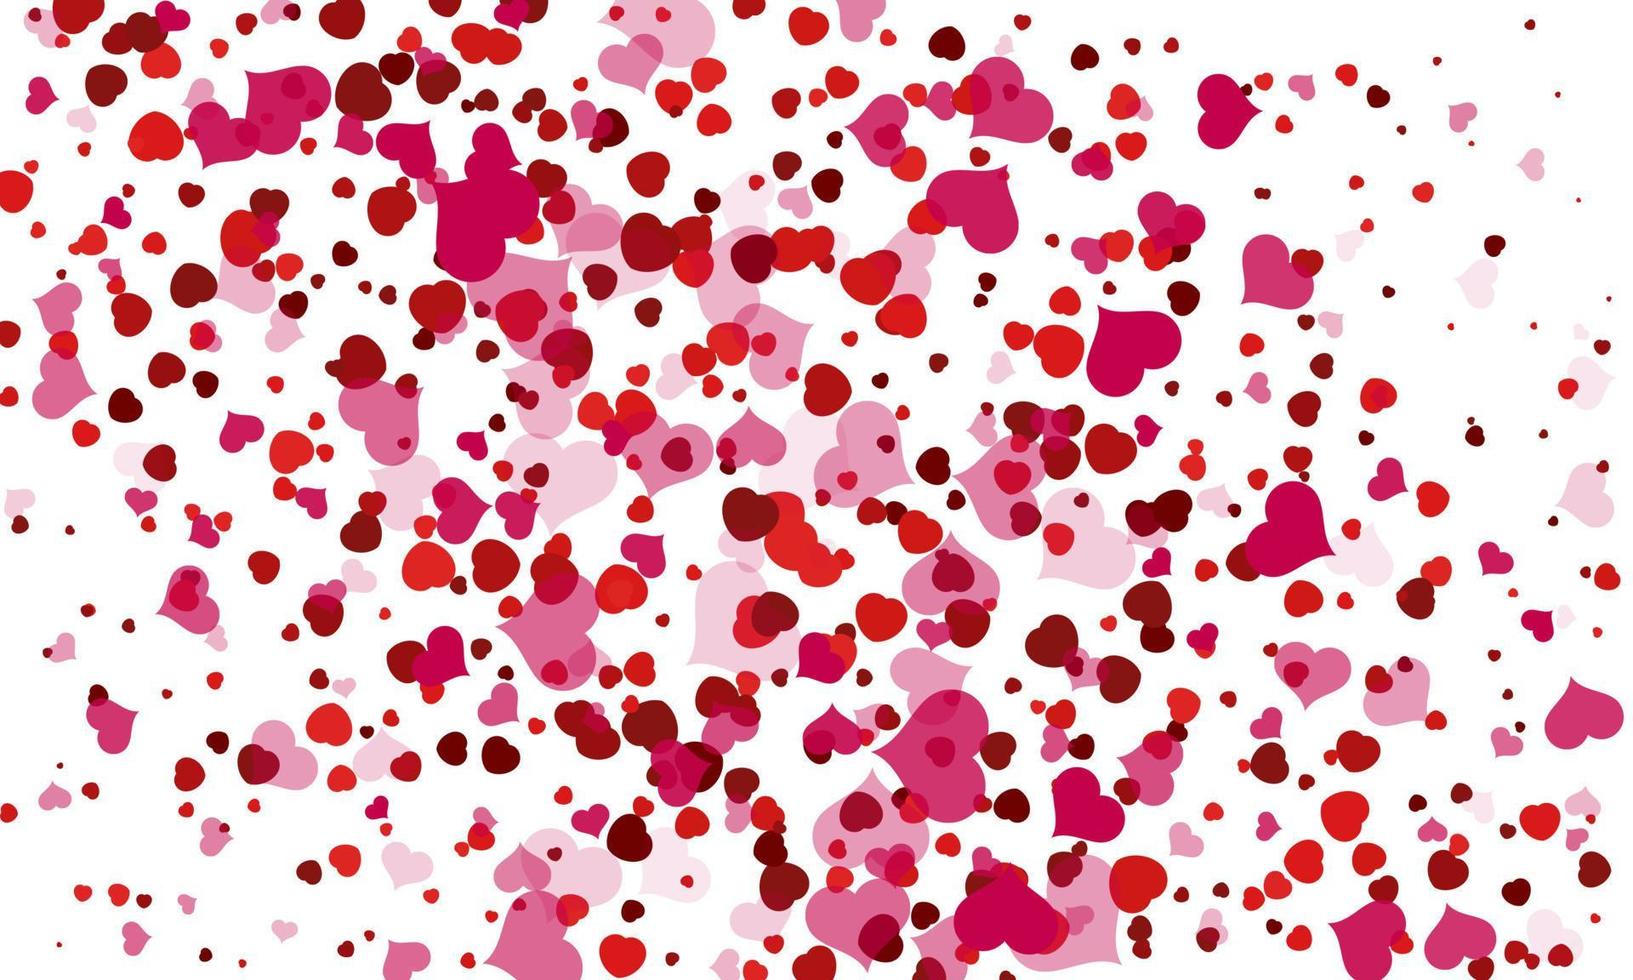 gelukkig valentijnsdag dag achtergrond. abstract harten voor valentijnsdag dag achtergrond ontwerp. vector illustratie.